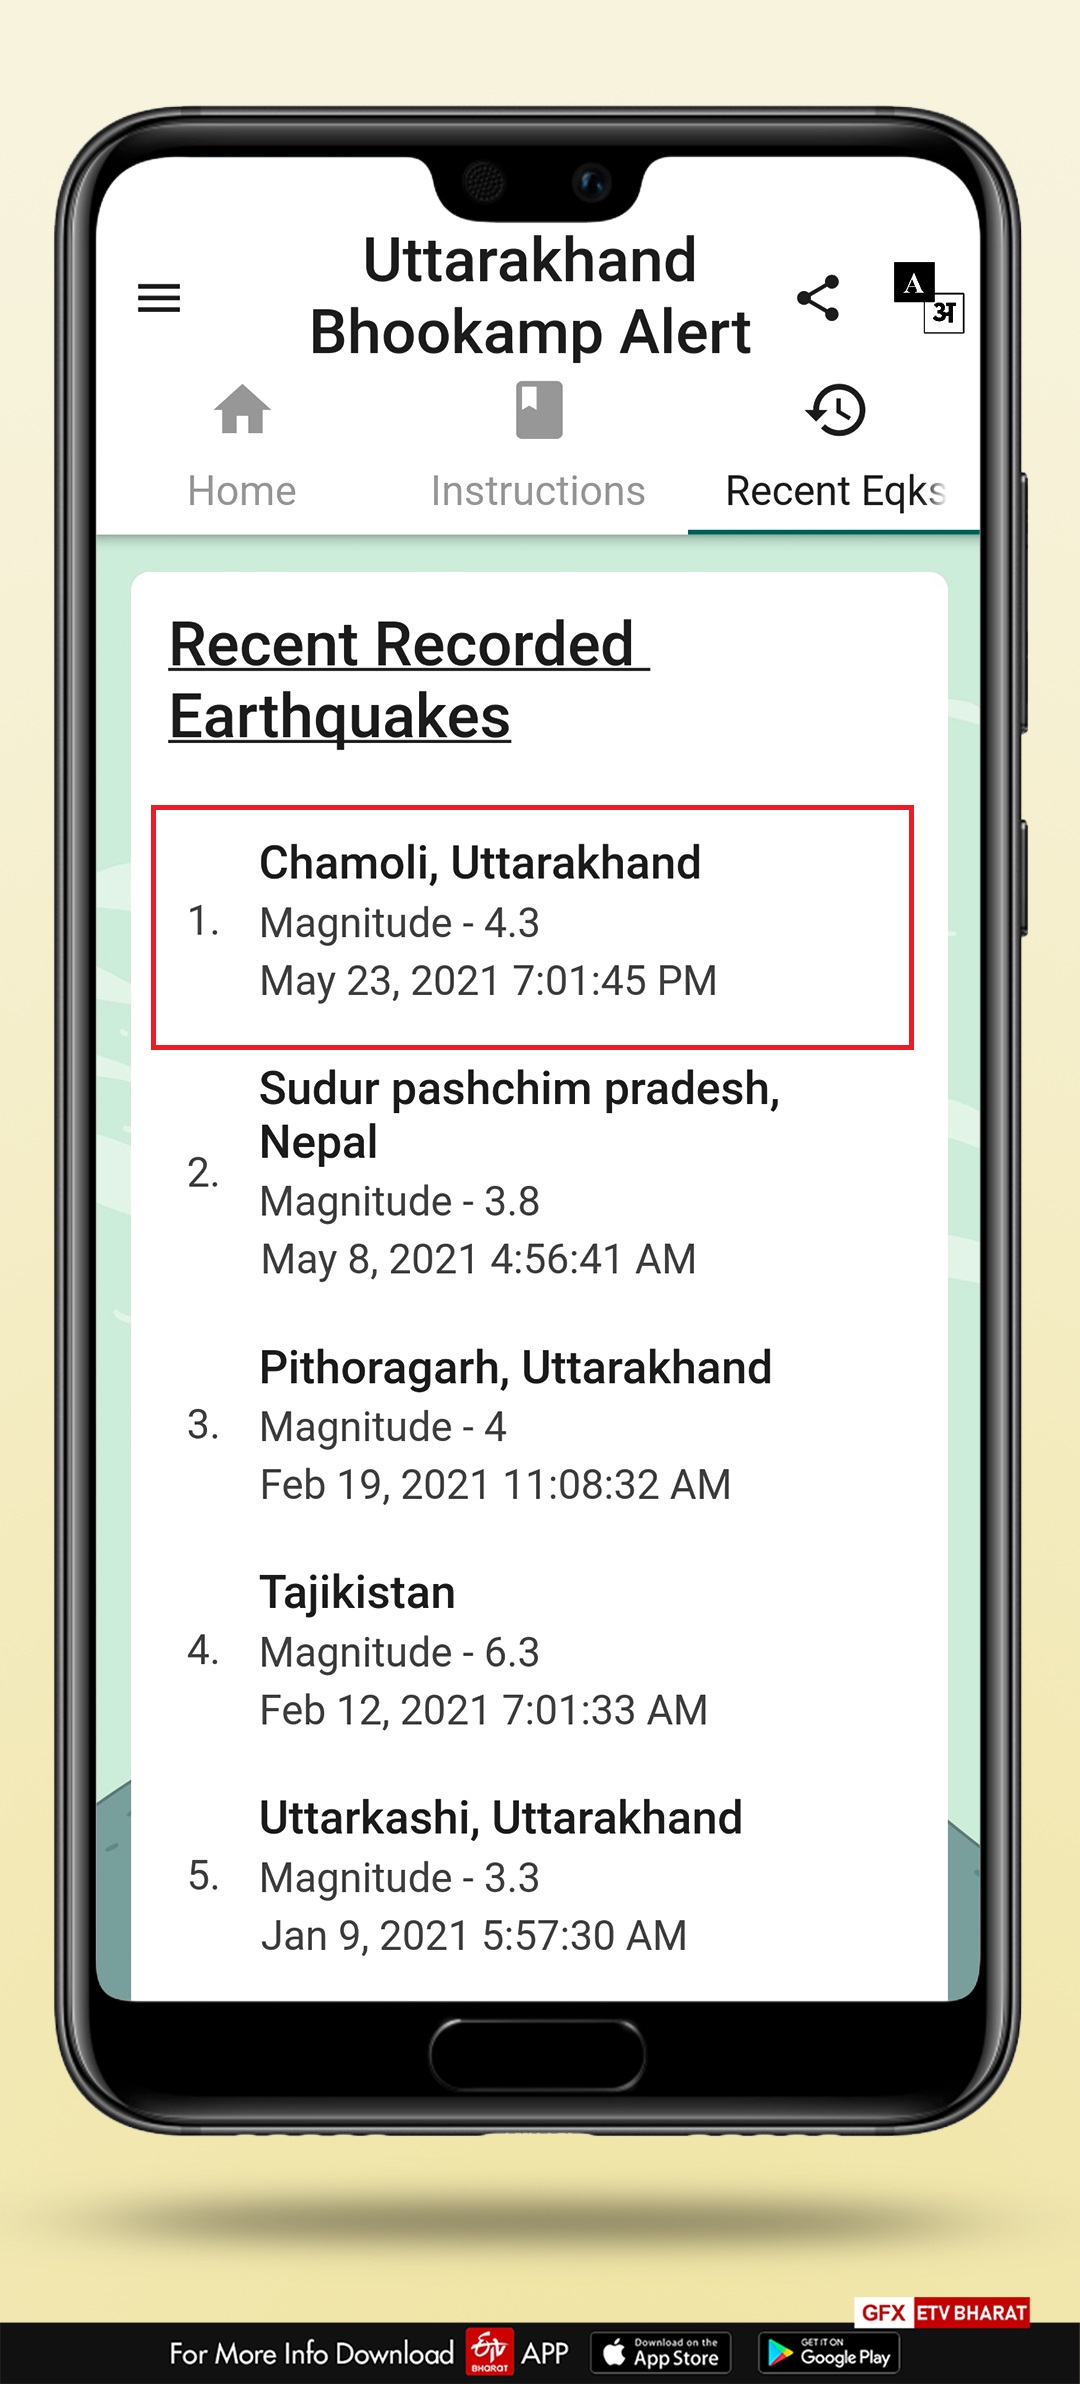 Uttarakhand earthquake alert app